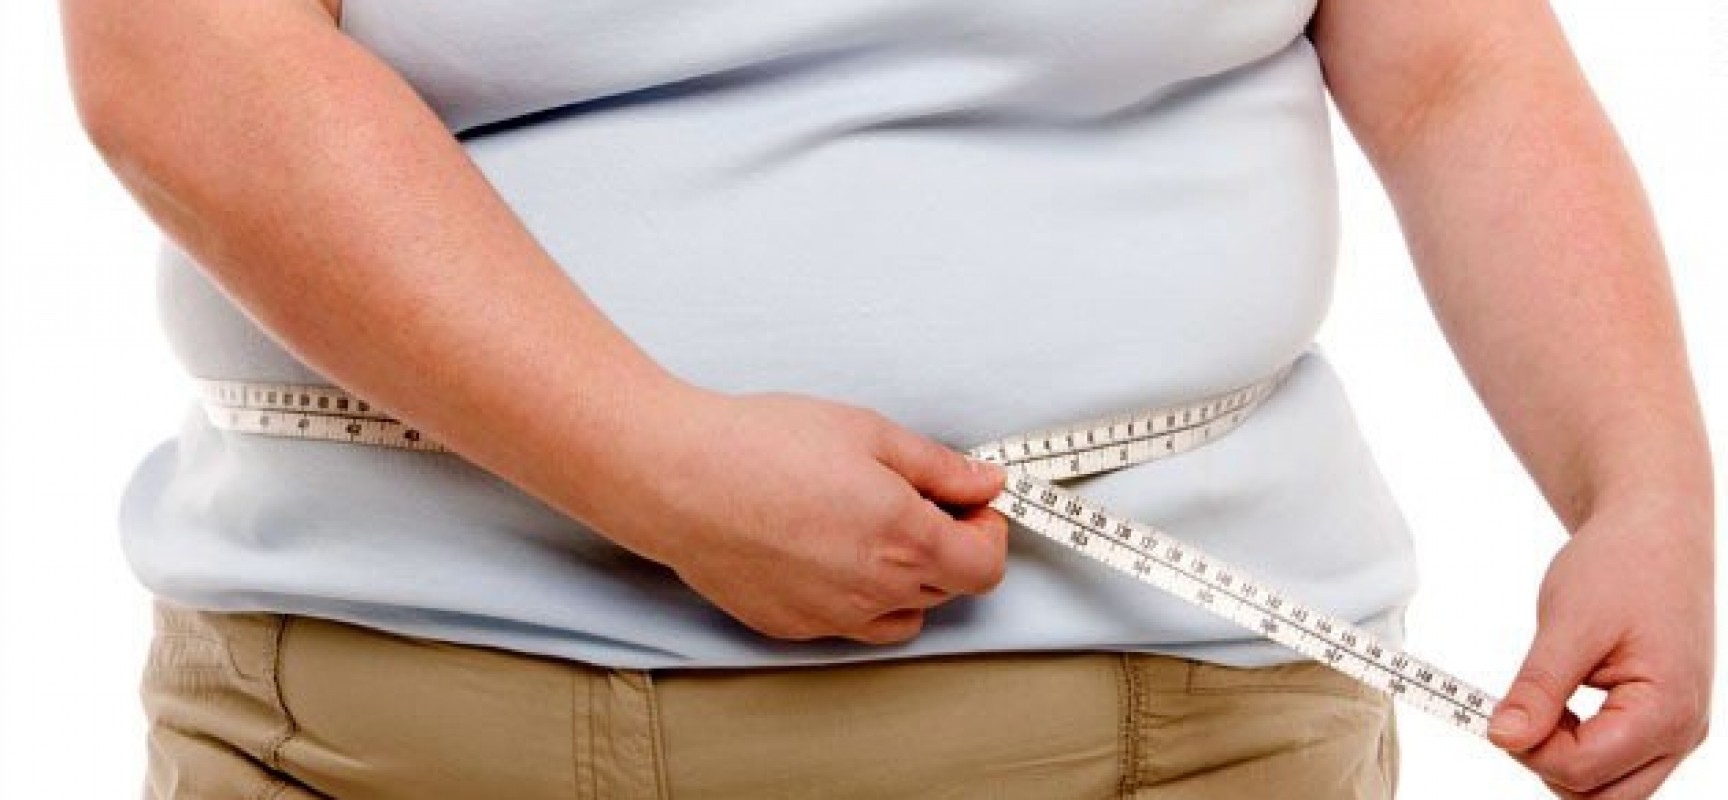 Hasta 10 kilos se puede subir de peso durante fiestas